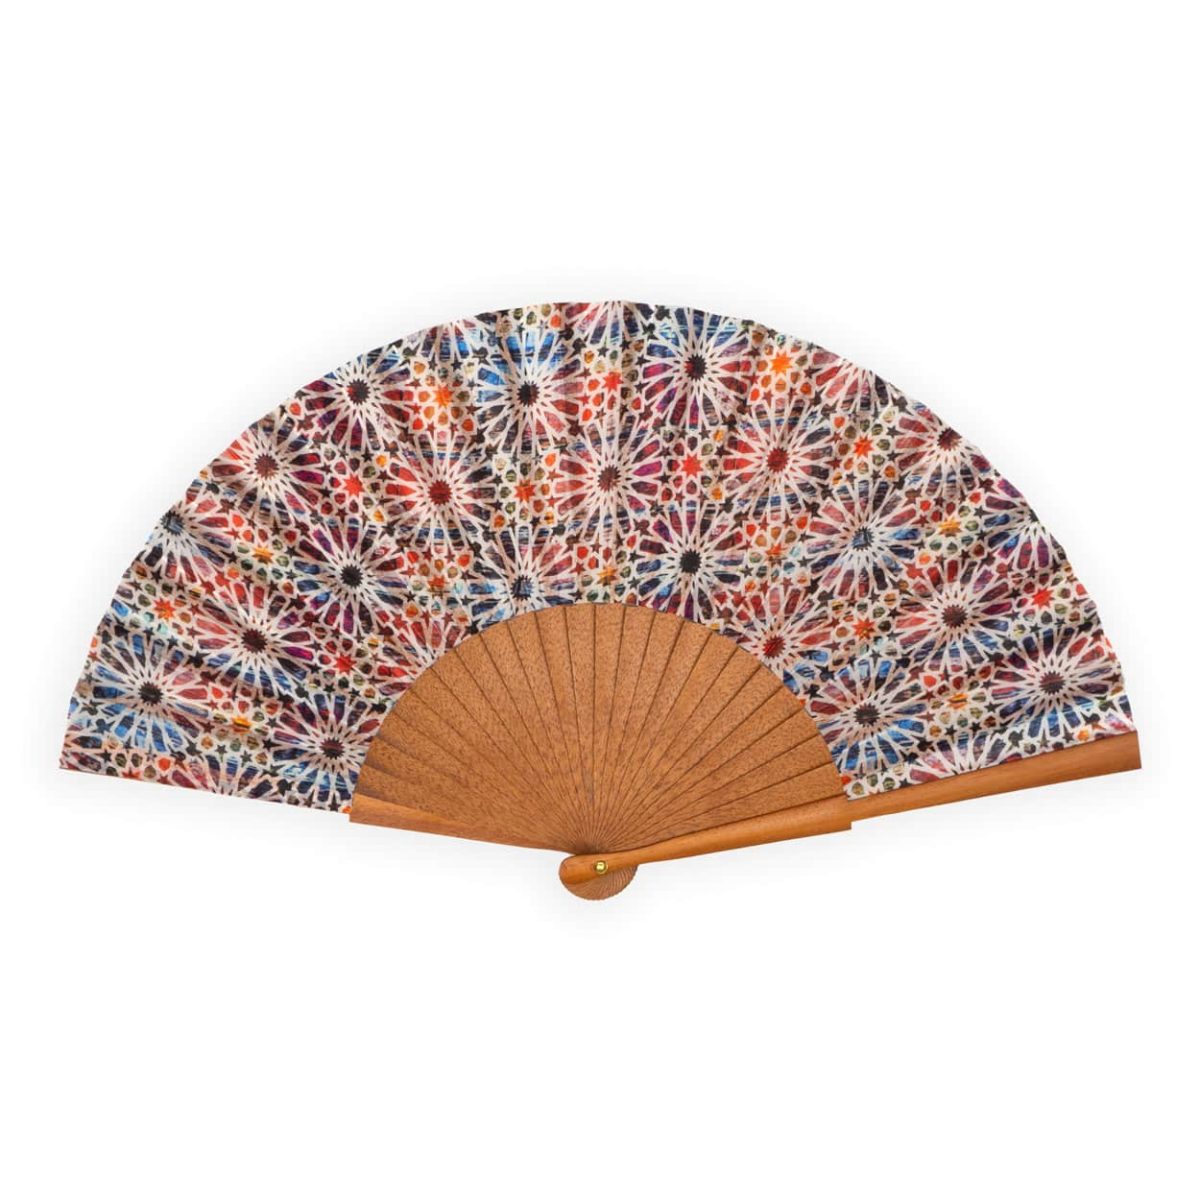 Colorful silk fan inspired by Islamic Art